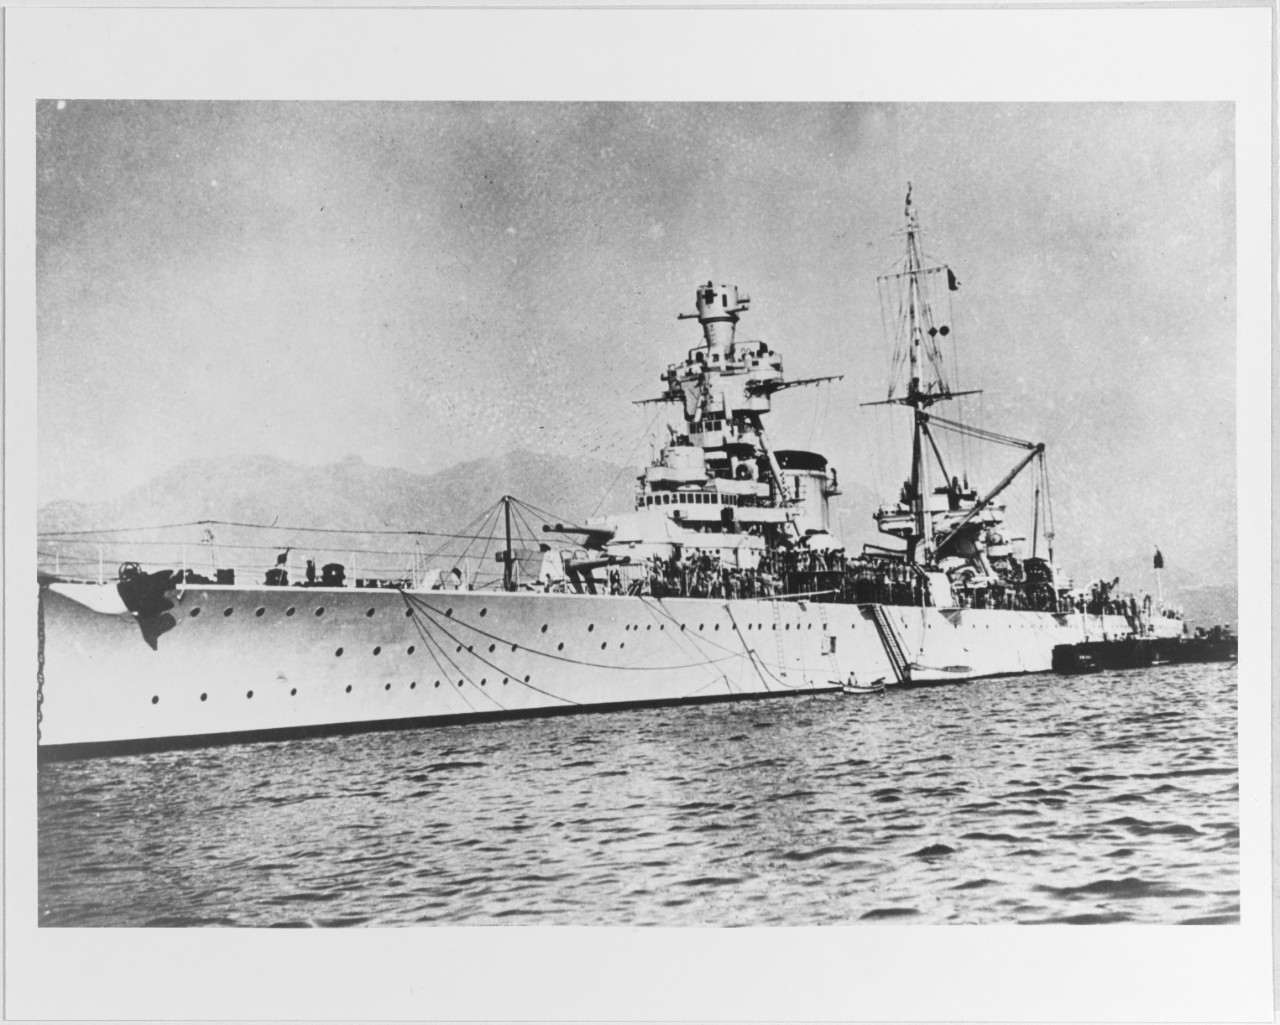 TRENTO (Italian heavy cruiser, 1927-1942)